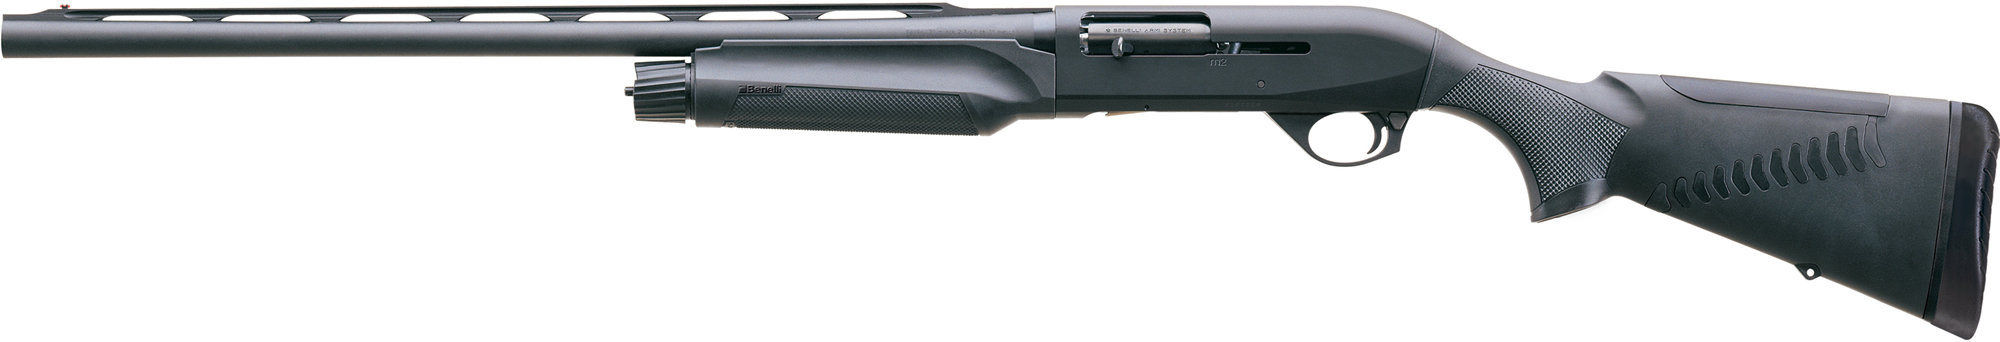 Гладкоствольное ружье BENELLI Moд. М2 BLACK COMFORTECH LH (полуавтоматическое)